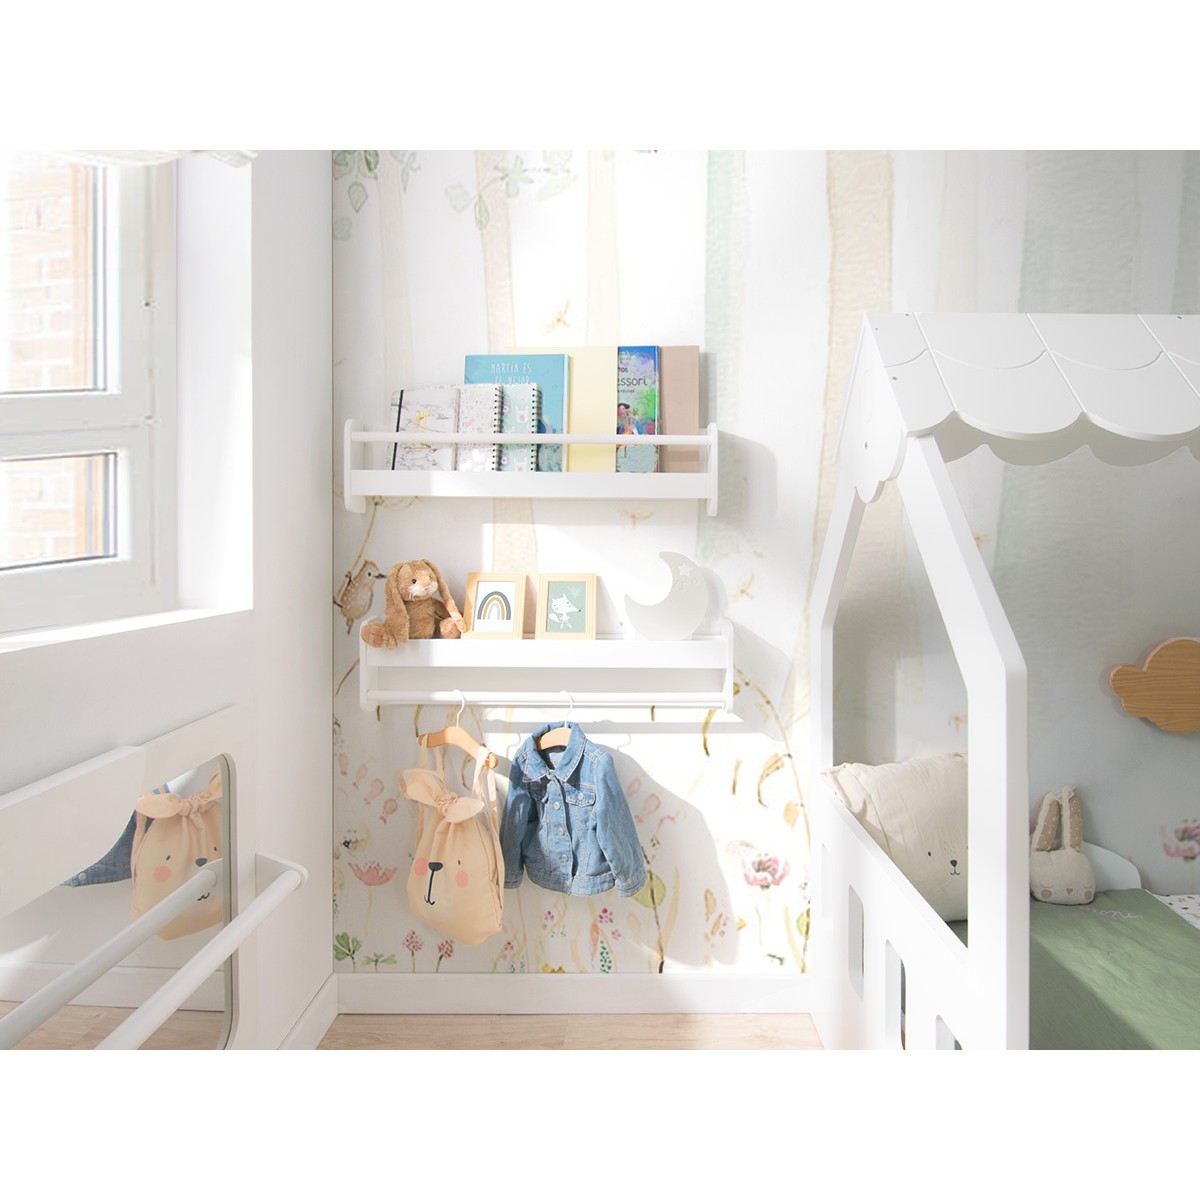 Qué hay en nuestros estantes? – What's on our shelves? - Montessori en Casa